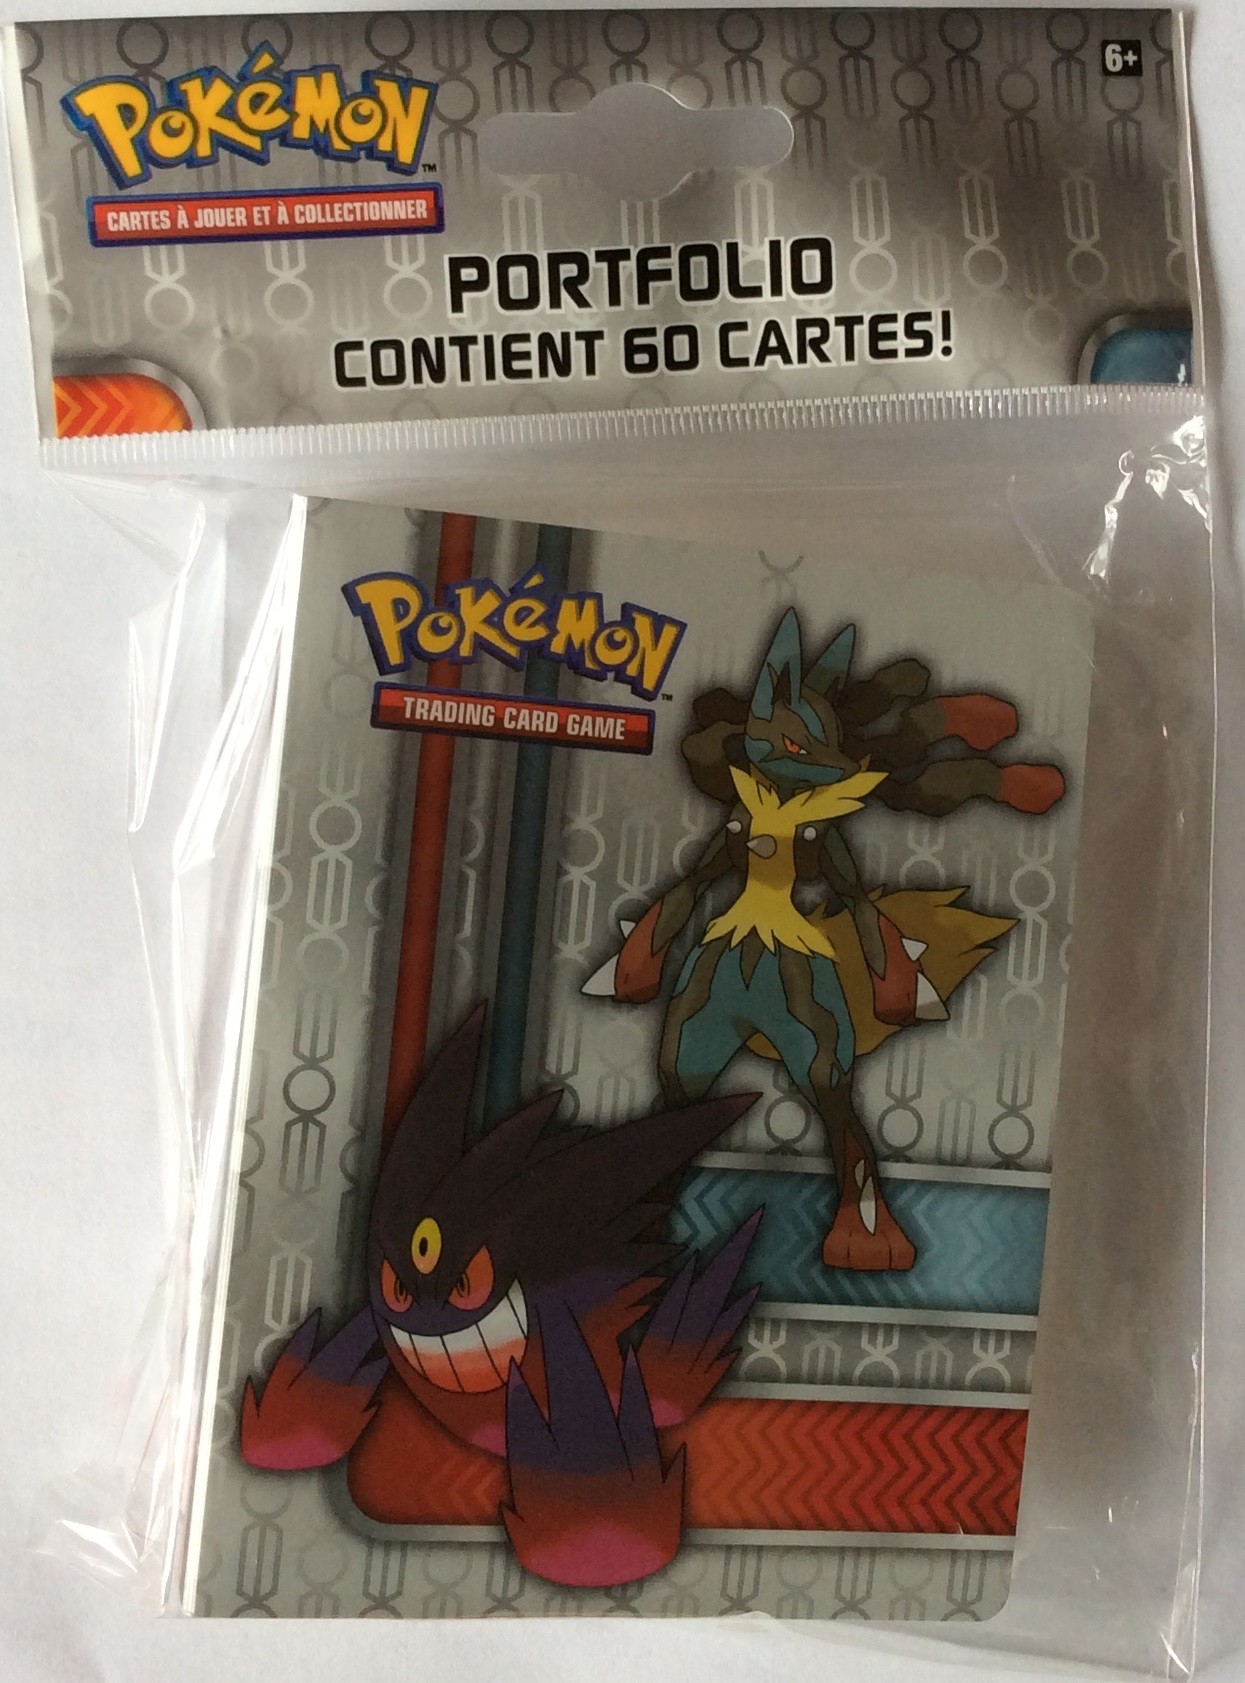 Pokémon - Paquet de 10 Feuilles de Classeur